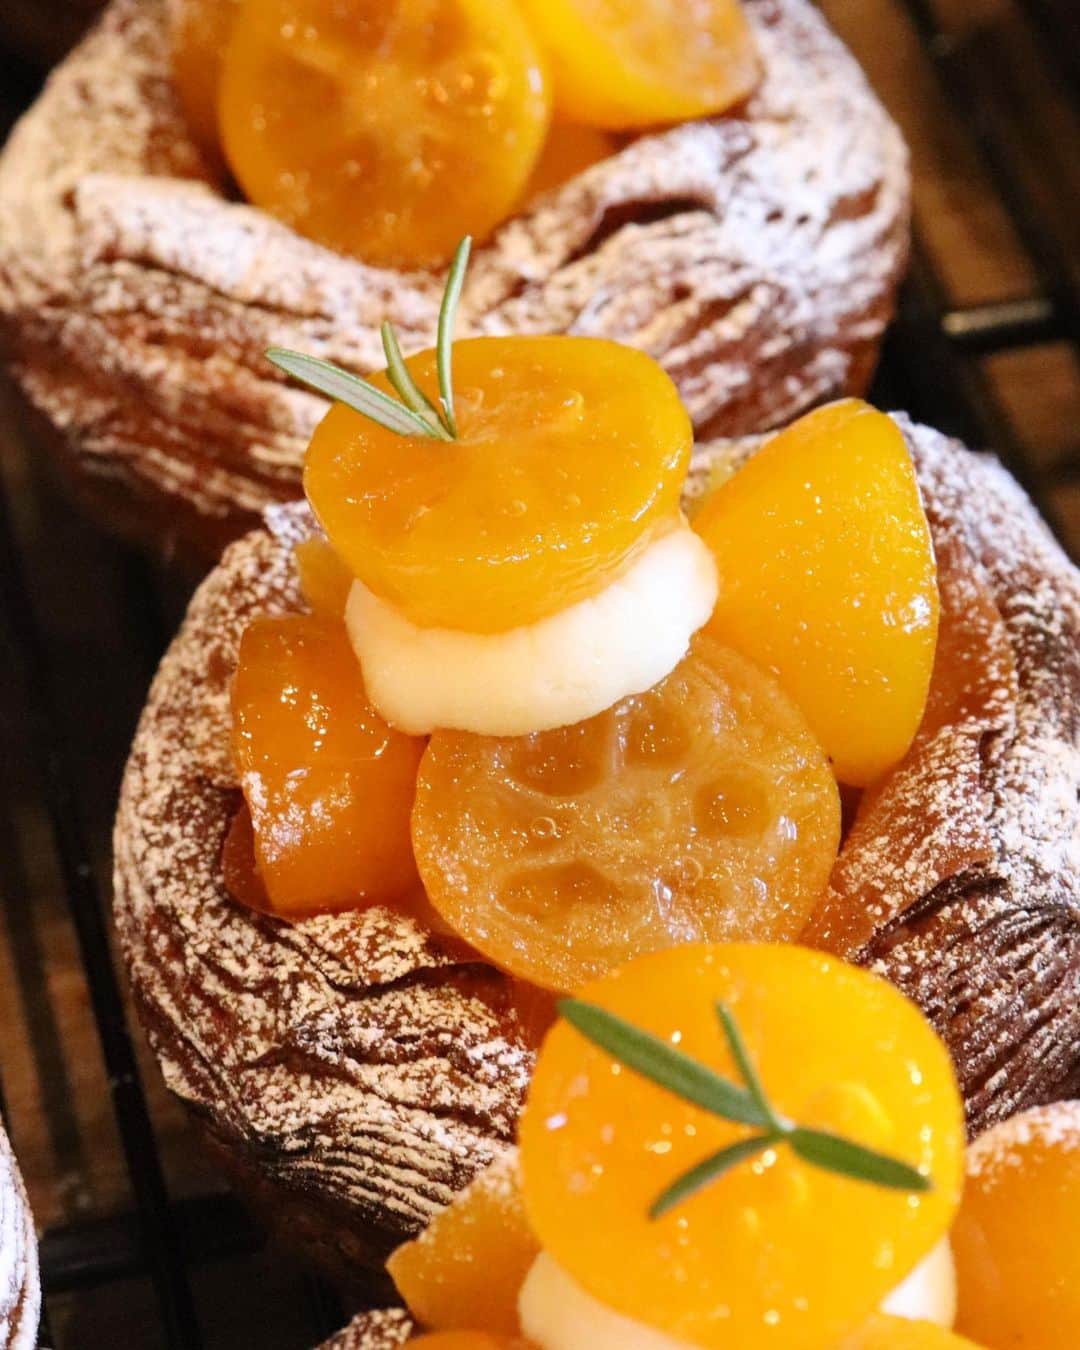 丘の上のパン屋 さんのインスタグラム写真 - (丘の上のパン屋 Instagram)「2021.02.24﻿ ﻿ おはようございます、﻿ 丘の上のパン屋です。﻿ ﻿ 今週もスタートです。﻿ 朝9時から焼き立てパンを豊富にご用意してお待ちしております。﻿ ﻿ 本日も、季節限定の「金柑とクリームチーズのデニッシュ」「完熟苺のデニッシュ」たくさんご用意しております。﻿ ﻿ 金柑の仕込みについては、地味～な手作業で種やヘタが一個も入らないように丁寧に取り除きます。手間暇かかけて美味しく仕上げていますので、ぜひお召し上がりください。﻿ ﻿ デニッシュは人気商品のため、売り切れ次第当日分終了となります。﻿ ﻿ ●季節限定のデニッシュ一覧﻿ ・金柑とクリームチーズのデニッシュ﻿ ・国産和栗のデニッシュ﻿ ・安納芋のデニッシュ﻿ ・自家製タルトタタンのデニッシュ﻿ ・完熟苺のデニッシュ﻿ ﻿ デニッシュのギフト用の箱詰めサービス（お箱代110円）を行っています、ぜひご利用ください。﻿ ﻿ 入店制限のため、外でお待ち頂いてしまう可能性もあります、ご理解・ご協力いただけると幸いです。﻿ ﻿ 今日も焼き立てパンとともに﻿ 宜しくお願い致します。﻿ ﻿ −−−−−−−−−﻿ ﻿ 💬 新型コロナウイルスの感染予防対策﻿ ﻿ ・営業時間 9:00～17:00﻿ ・定休日 月曜日、火曜日﻿ ・テラス席の利用は、30分となります﻿ ・テラス席でのゴミは各自お持ち帰りください﻿ ・3名様までの入店制限﻿ ・マスクを着用していない方は入店をお断りする場合がございます﻿ ・お並びの際は間隔を約2m程開けて頂く﻿ ・入退店時の手指消毒﻿ ﻿ 店内は窓を開け、大型換気扇と空気清浄機を設置しております。﻿ ﻿ エコバッグご持参頂きましたお客様には、ご自身でのお包みをご協力頂き、使用したテーブルはその都度消毒しております。﻿ ﻿ 窮屈なお願いばかり申し上げて、申し訳ございません。﻿ ﻿ 感染拡大防止にご協力頂けたら幸いです。﻿ ﻿ −−−−−−−−−﻿ ﻿ 💬 マイバックをご持参ください﻿ ﻿ レジ袋は有料となります。﻿ ゴミ削減にご協力お願い致します。﻿ ﻿ −−−−−−−−−﻿ ﻿ 💬 ご予約について﻿ ﻿ ●予約可能商品﻿ ・食パン(9:30/14:00)﻿ ・カンパーニュ﻿ ・バゲット﻿ ・エッグタルト﻿ ﻿ ※グルテンフリー米粉パン(プレーン、大納言)﻿ ※一升パン﻿ (※は木、金のお渡しになります)﻿ ﻿ 📞 045-530-9683（クロワッサン🥐）﻿ ﻿ −−−−−−﻿ ﻿ 🏷﻿ #丘の上のパン屋 #金柑 #いちご #デニッシュ #横浜 #青葉区 #たまプラーザ #ベーカリーカフェ #パン屋 #パン #パン屋さん #横浜パン屋 #🍞 #焼き立てパン #美しが丘 #美しが丘西 #田園都市線 #天然酵母 #国産小麦 #農薬不使用 #上白糖不使用 #脱プラスチック #bakery #boulangerie #boulanger #yokohama #instabread #sourdough」2月24日 10時00分 - okanouenopanya